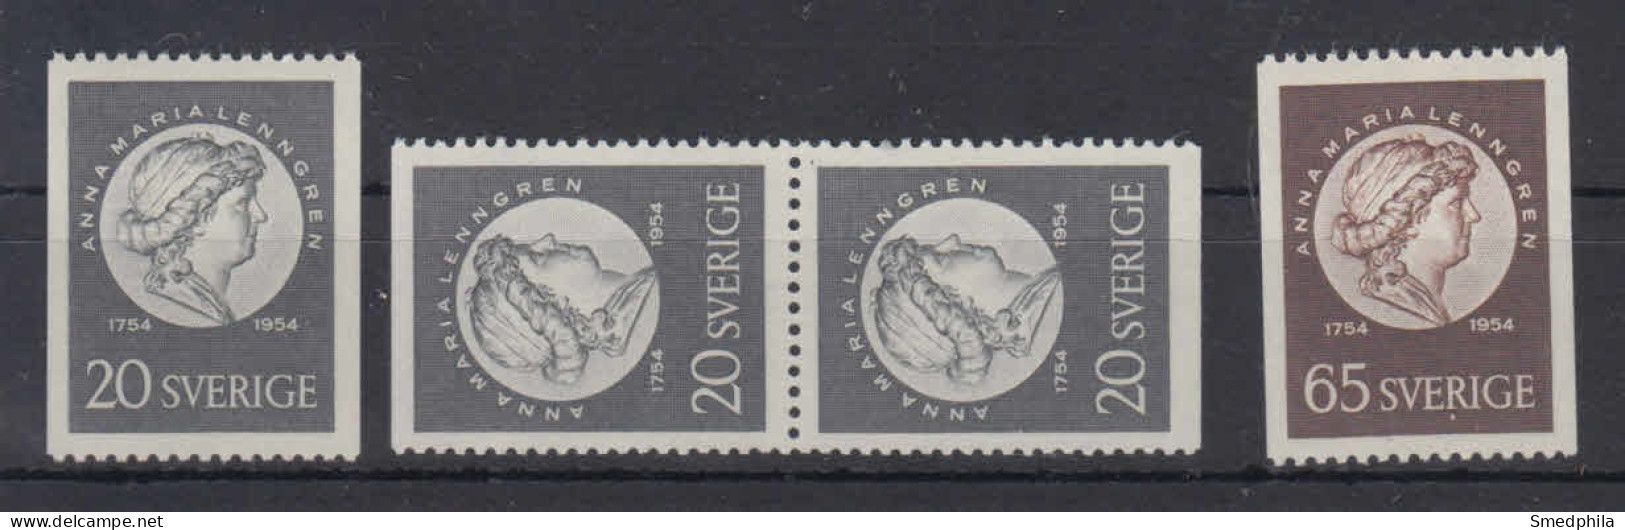 Sweden 1954 - Michel 394-395 MNH ** - Ongebruikt